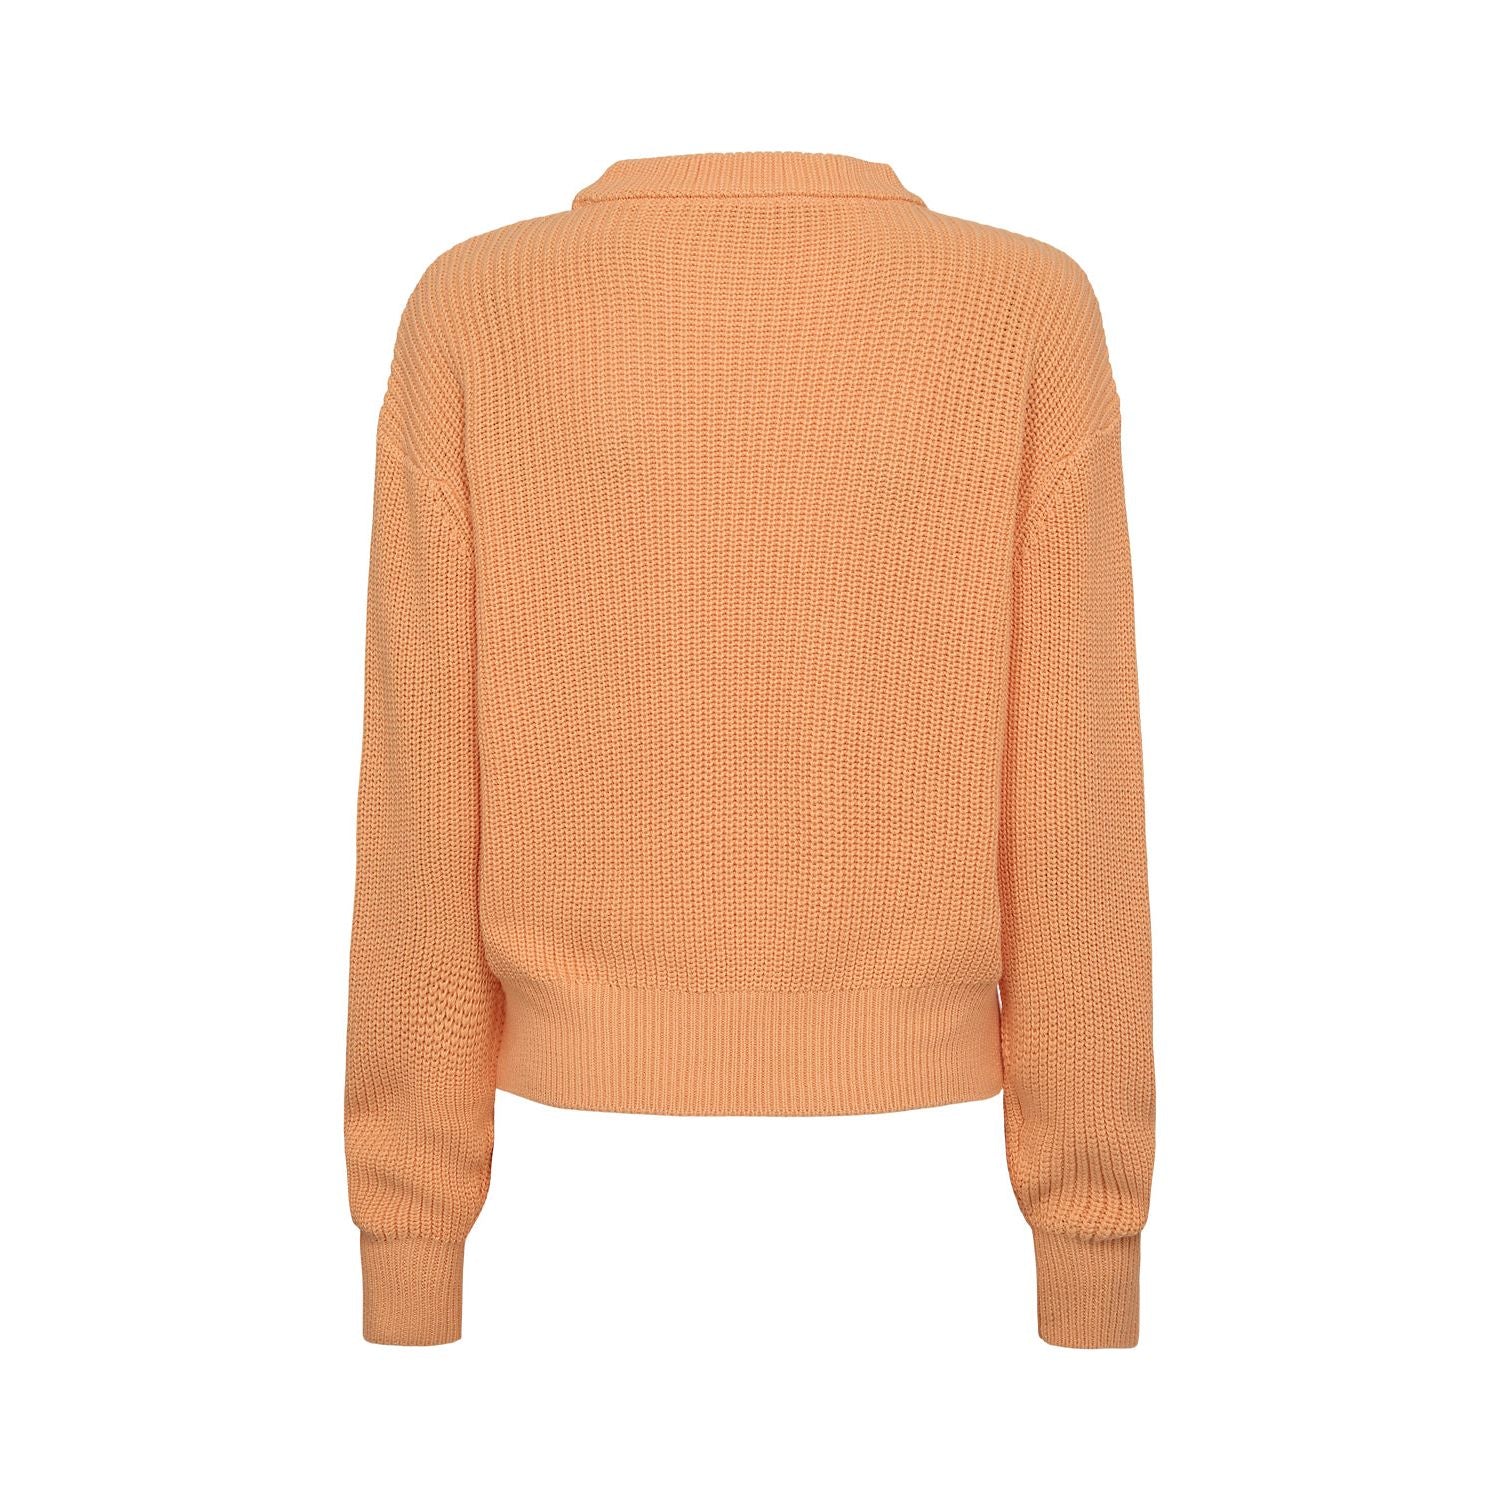 Minimum - Mikayla Sweater in Peach Cobbler